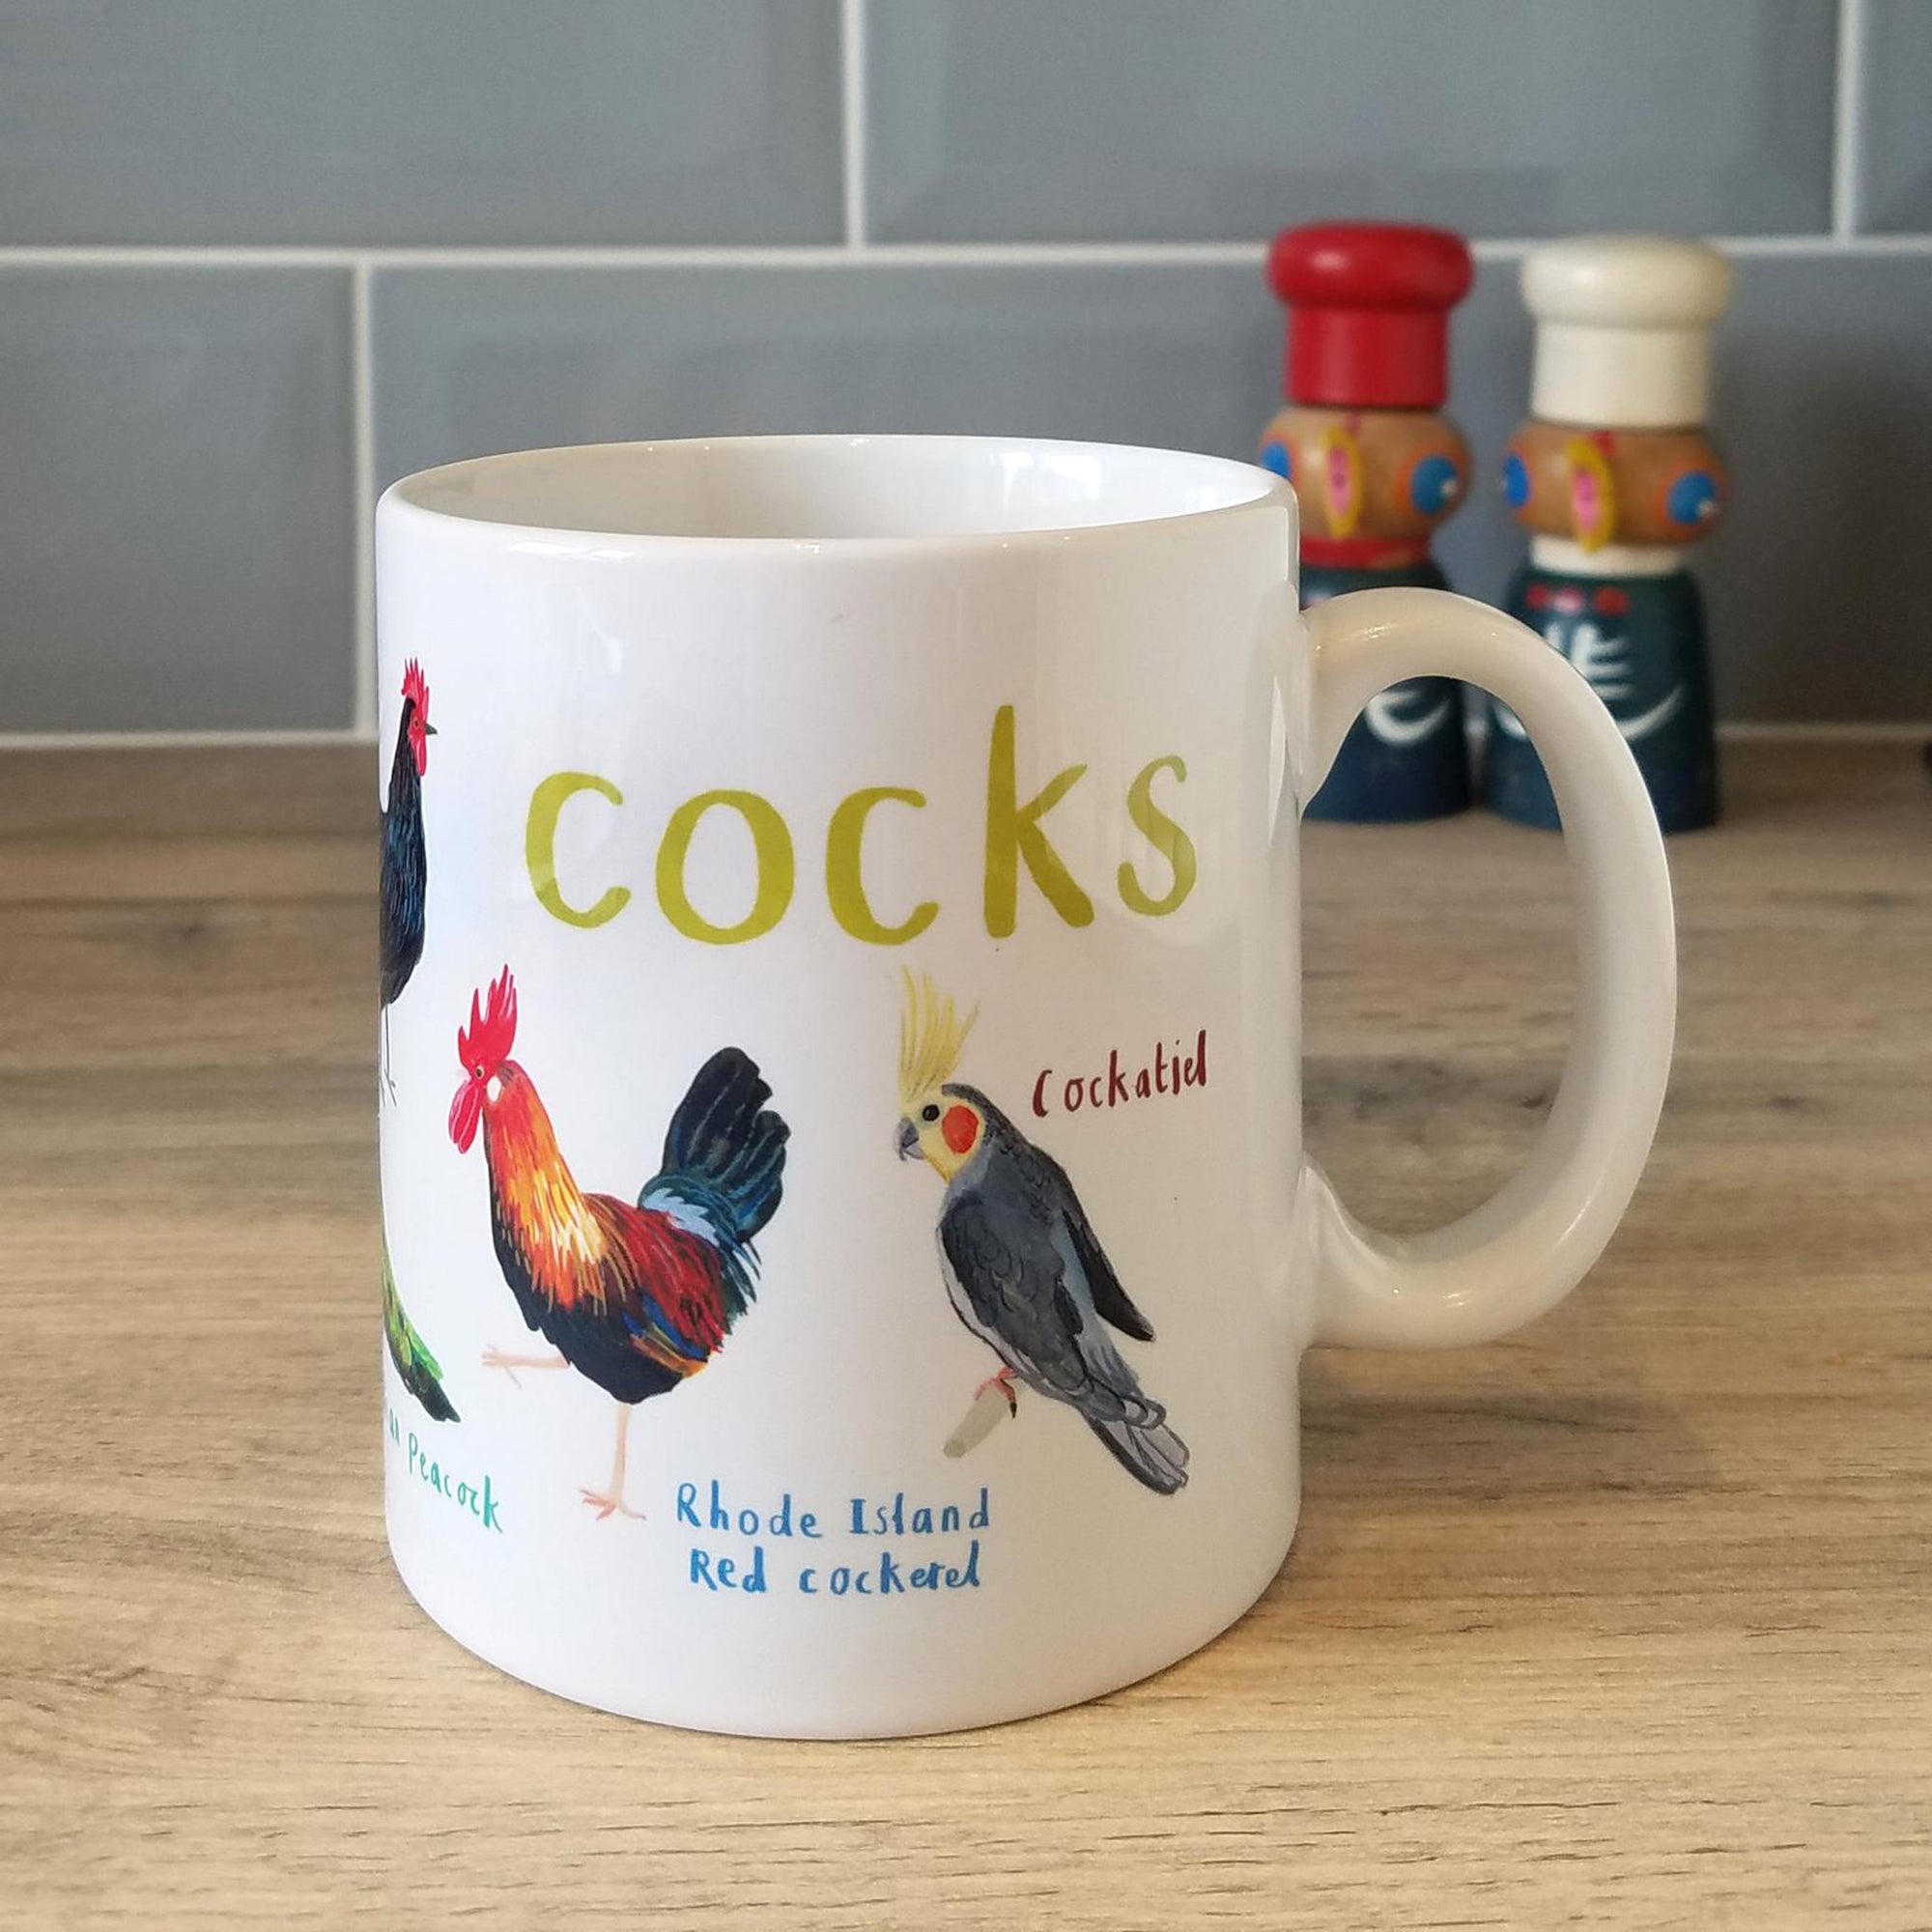 Cocks mug